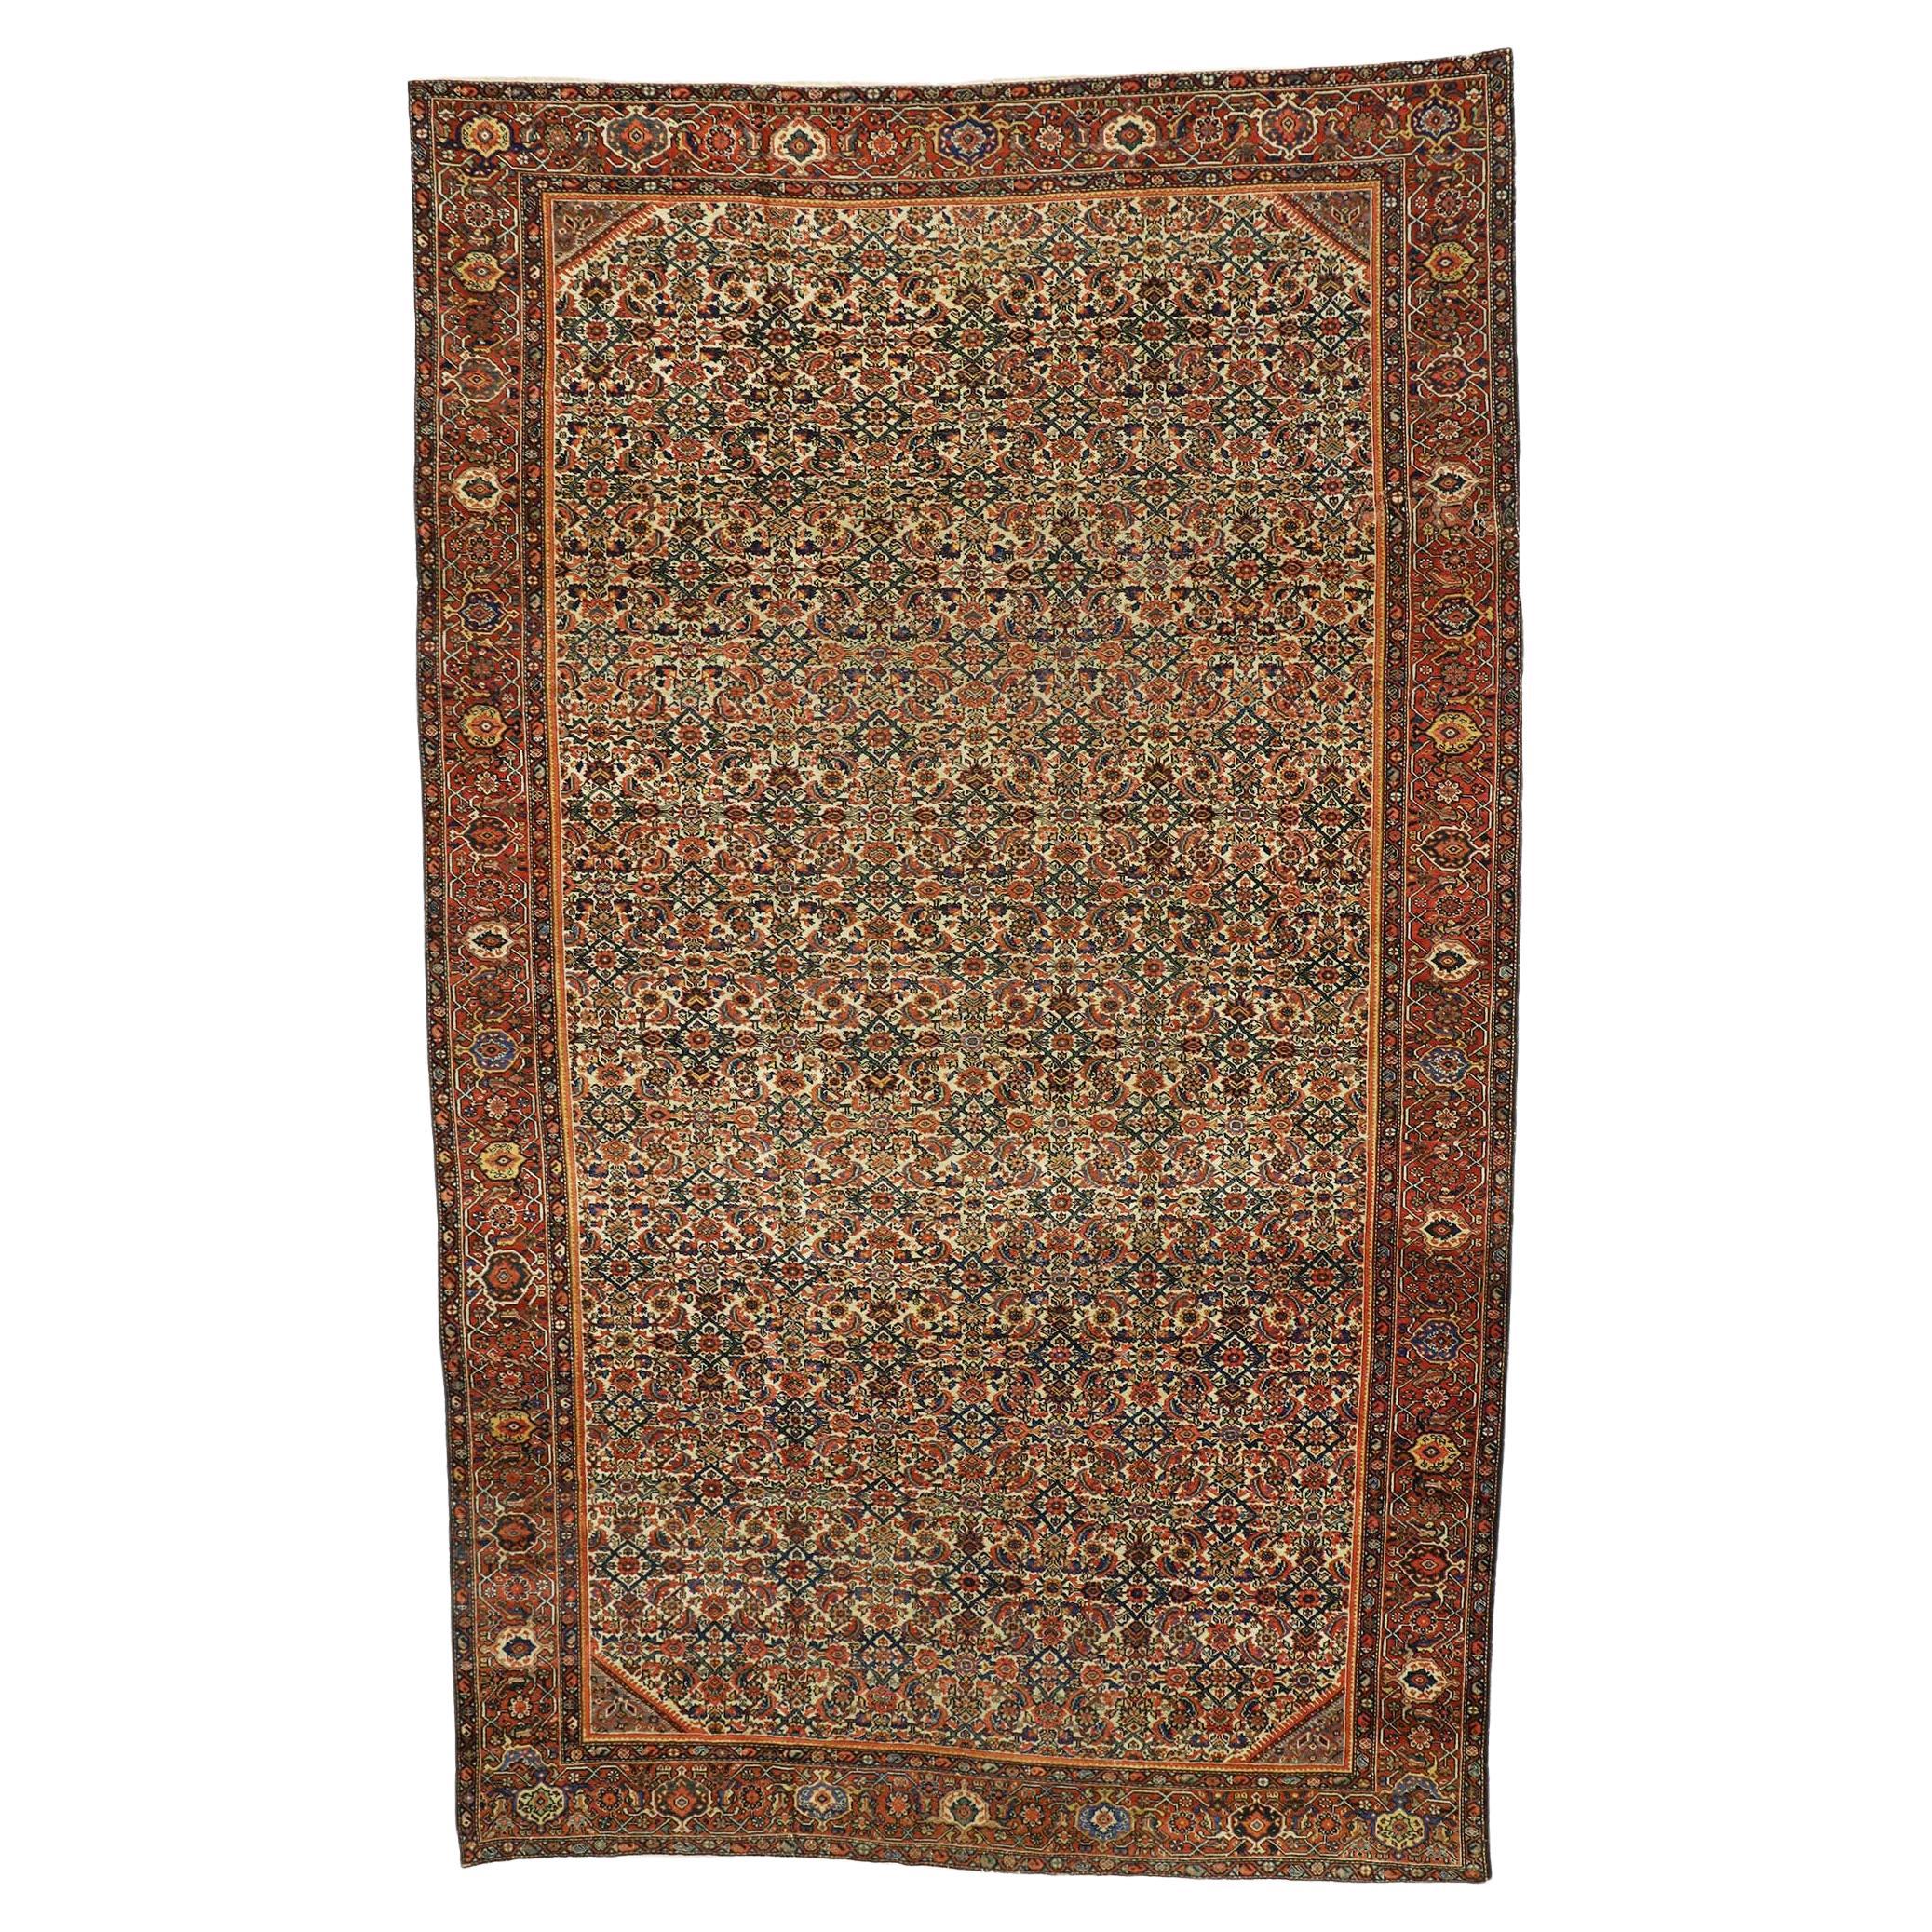 Antiker persischer Farahan-Teppich aus dem späten 19. Jahrhundert